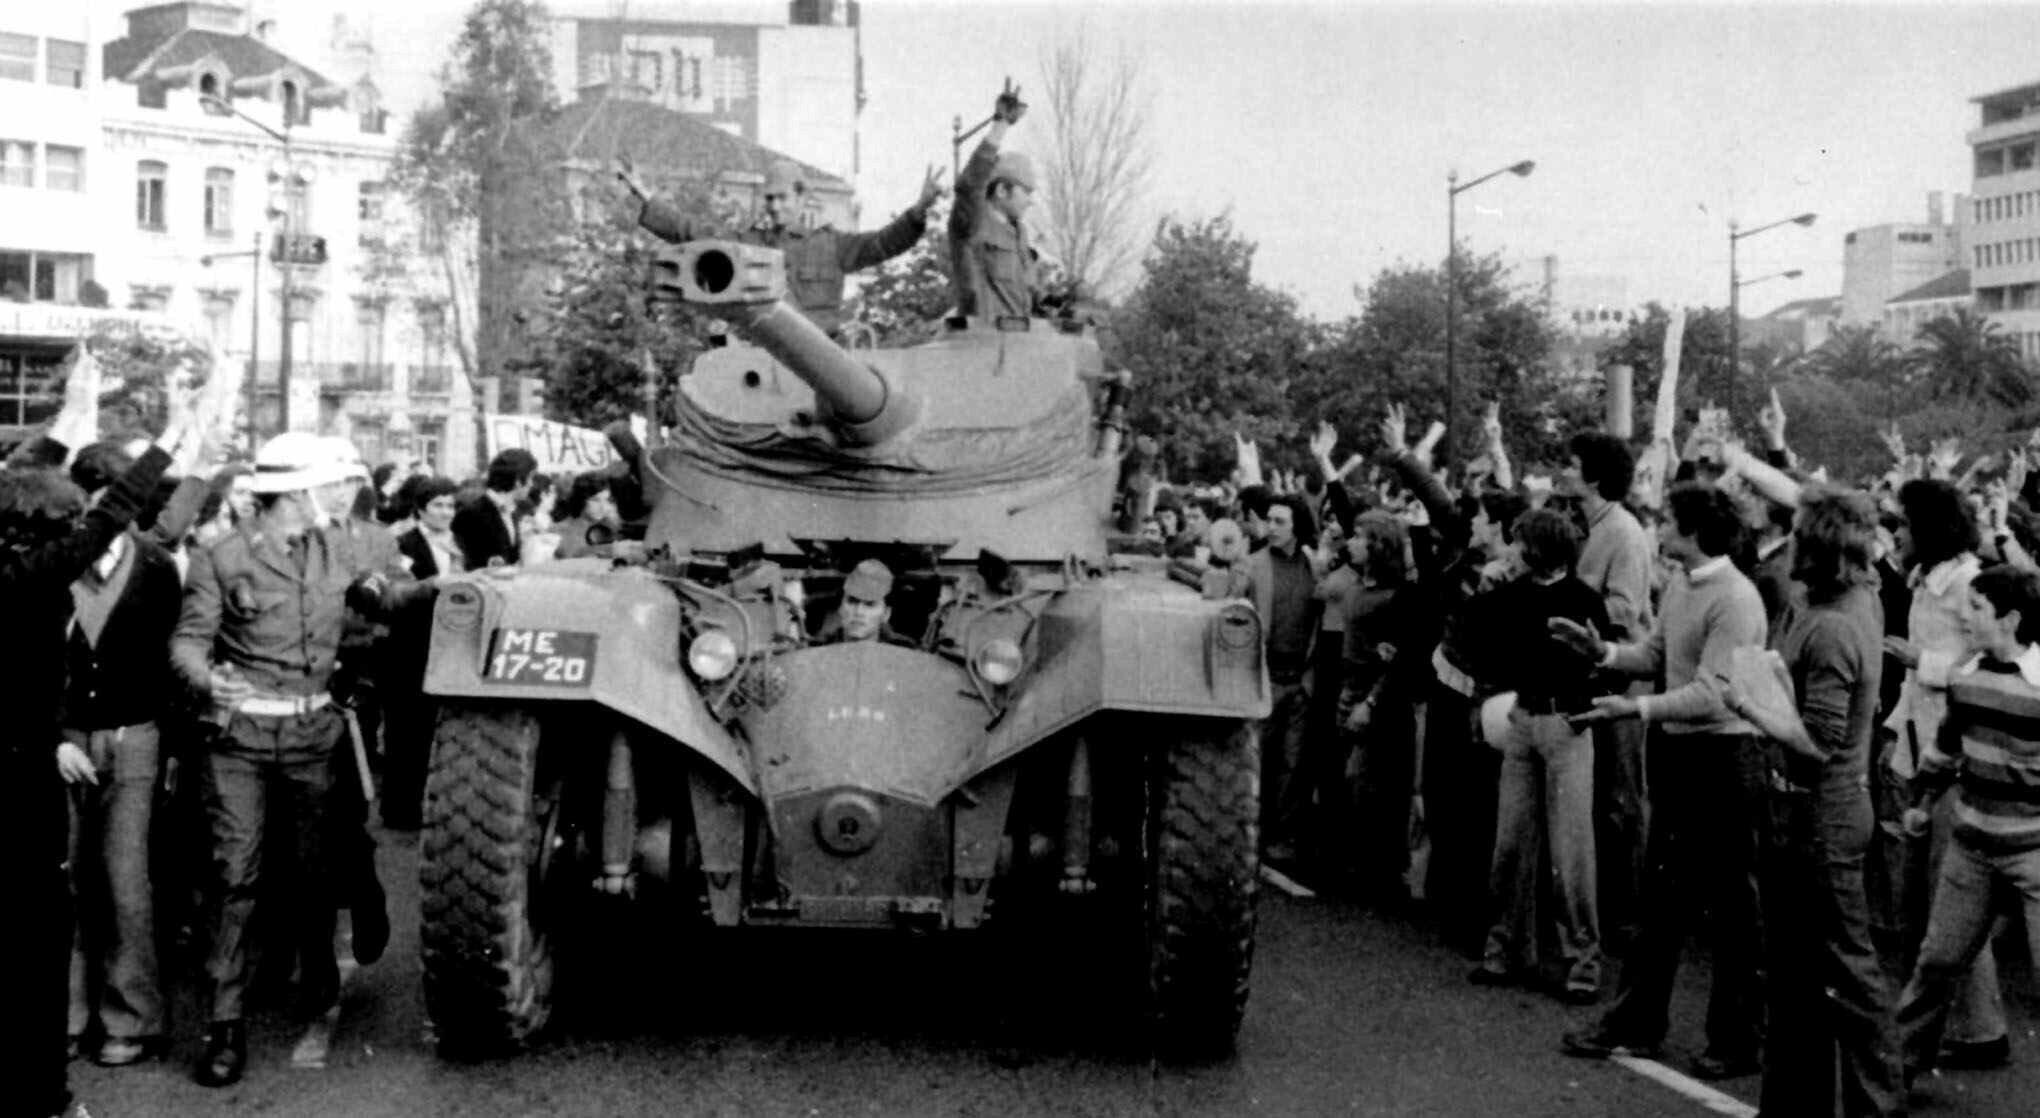 Des soldats portugais sont applaudis par la foule lors du coup d'Etat du 25 avril 1974 connu sous le nom de "révolution des oeillets".